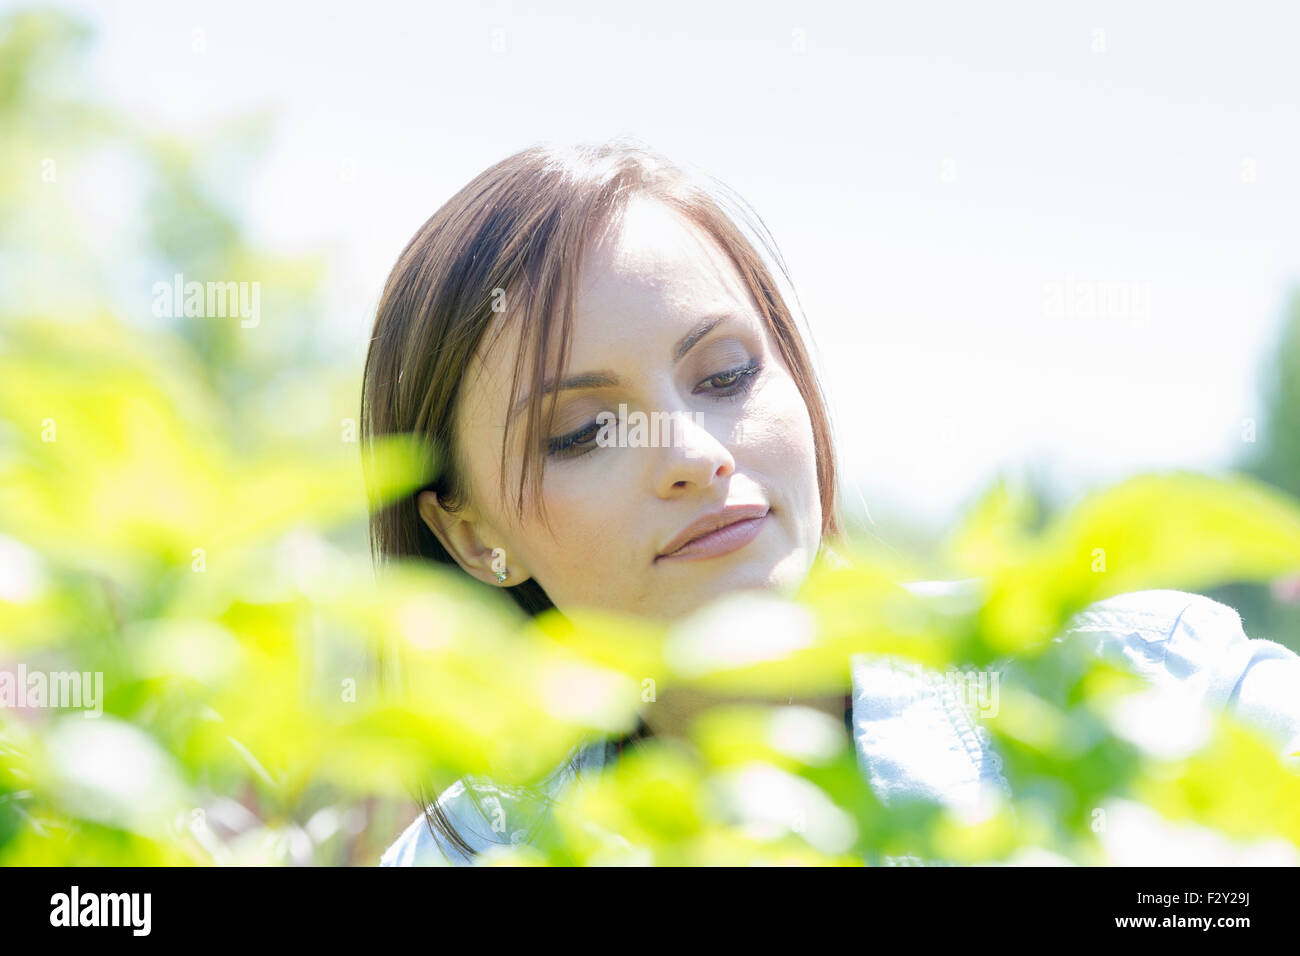 Junge Frau im freien umgeben von grünen Pflanzen. Stockfoto